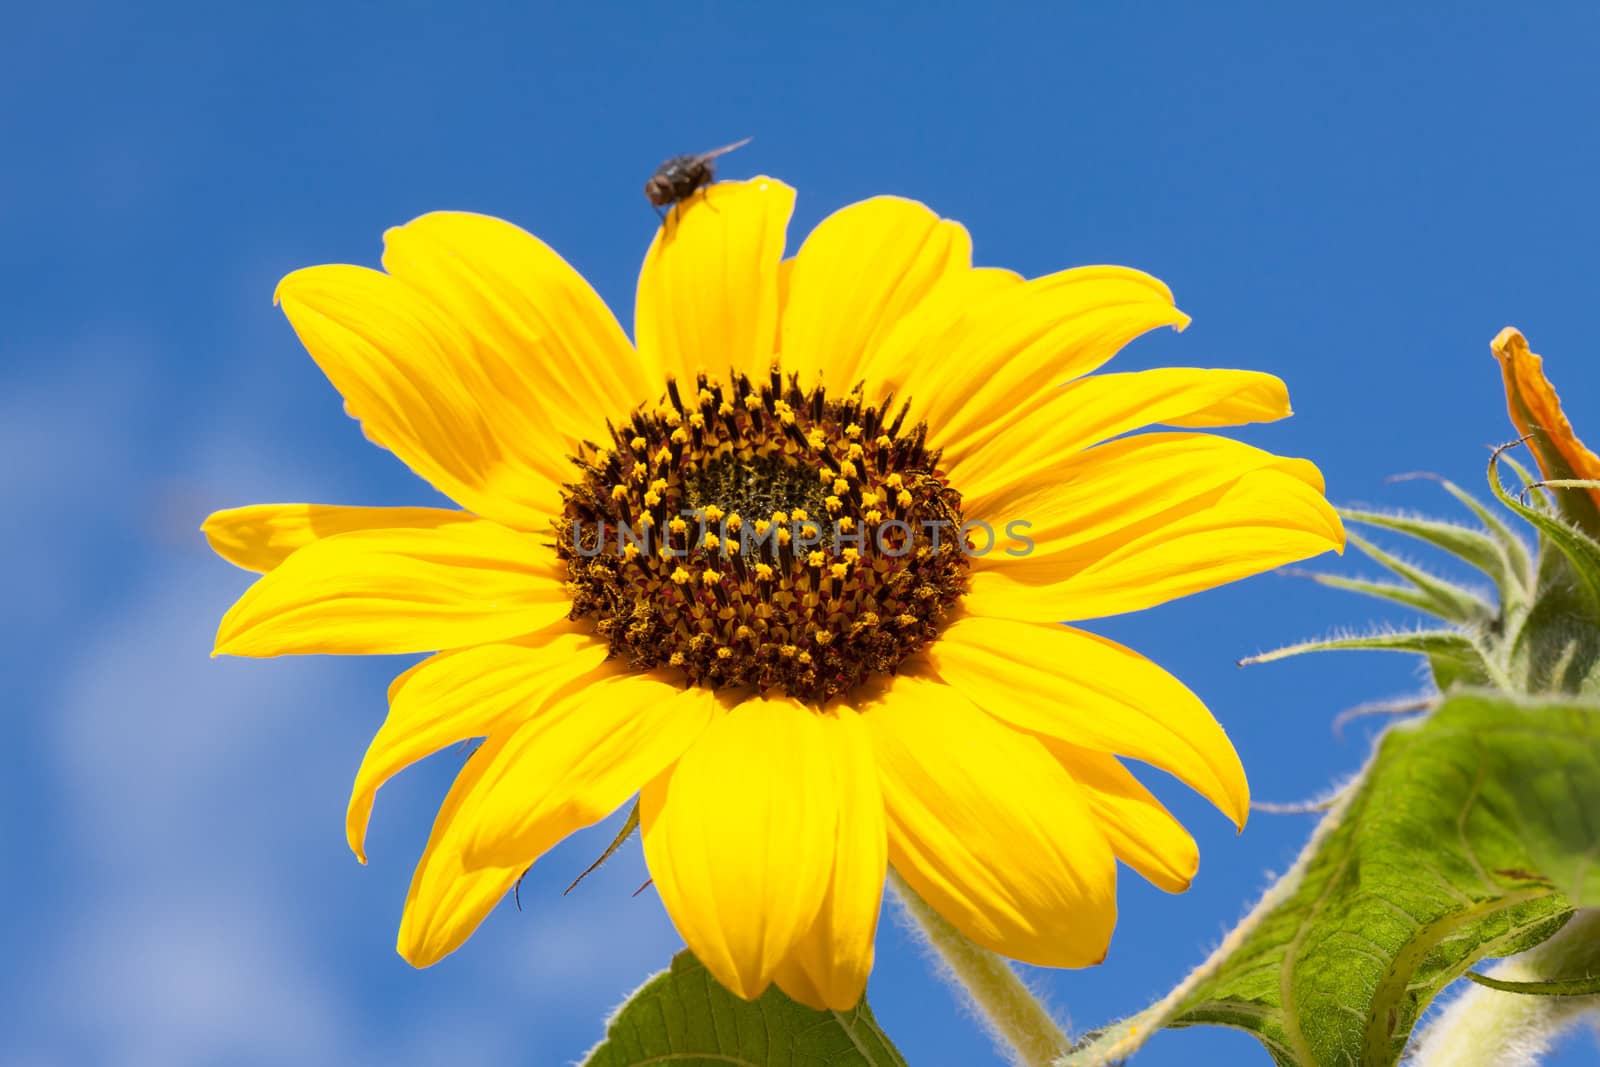 Sunflower by vtorous